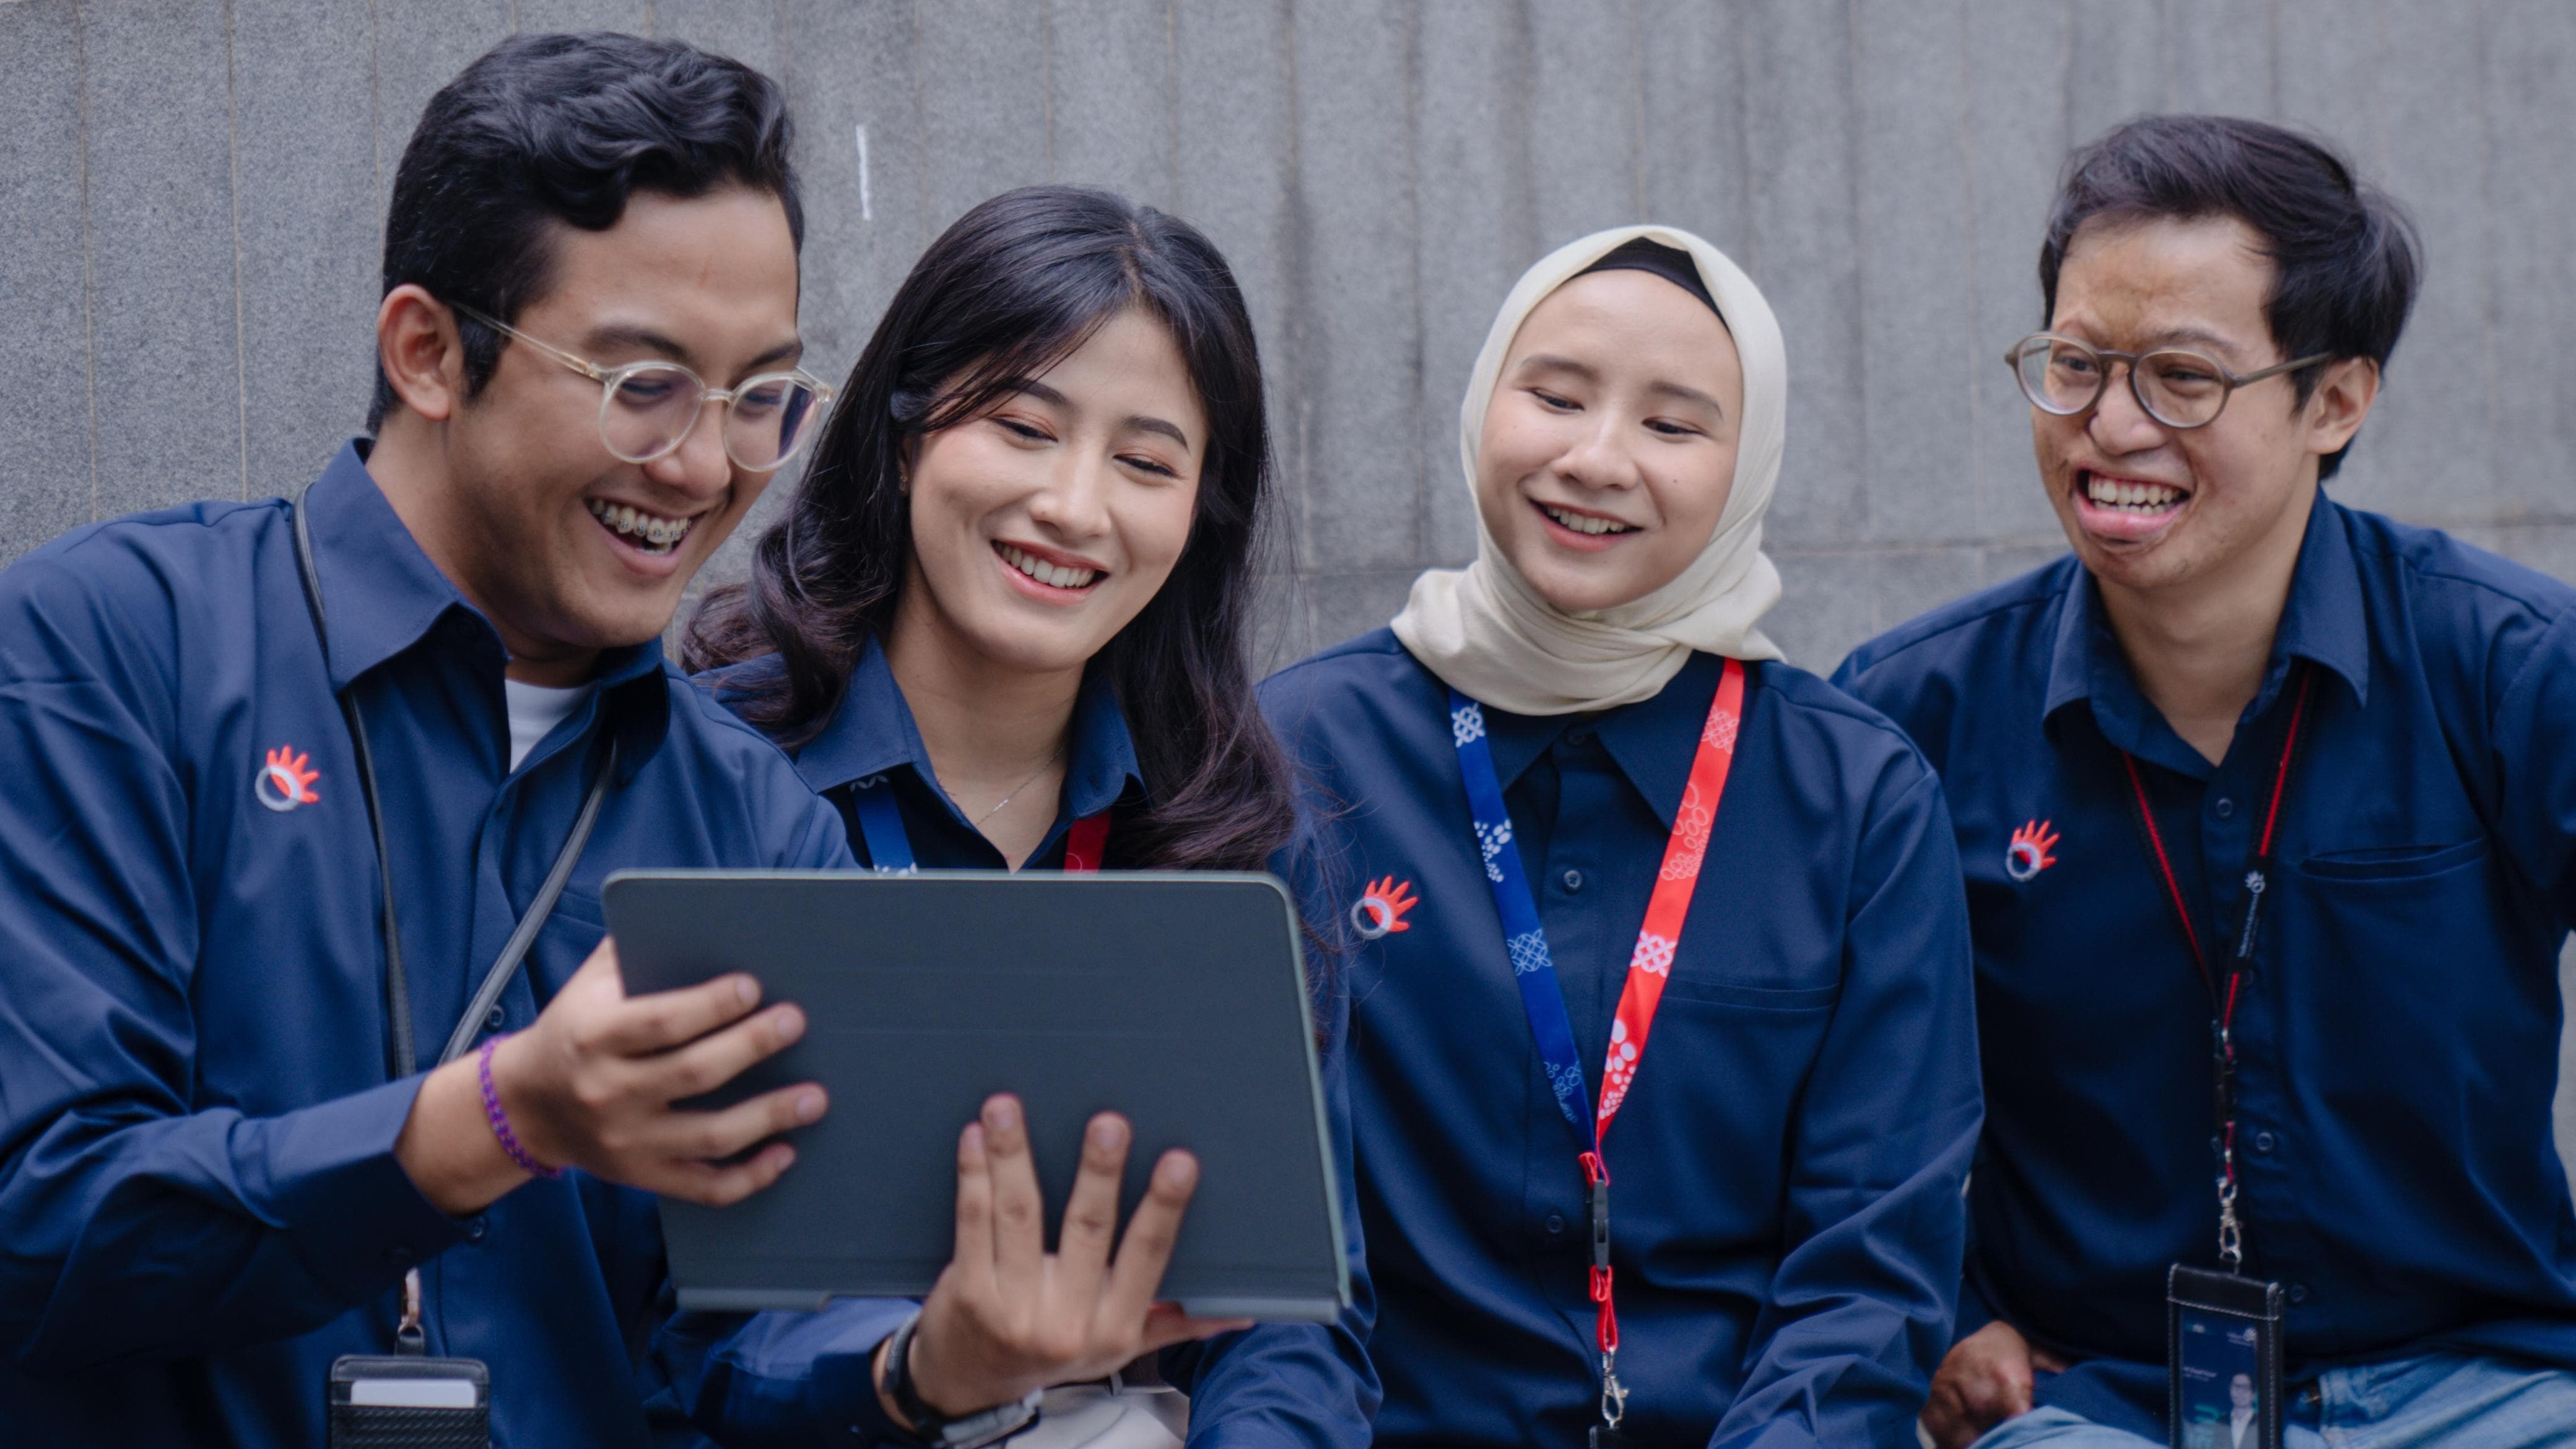 Telkom Indonesia kembali meraih penghargaan sebagai tempat kerja terbaik untuk mengembangkan karier versi LinkedIn Top Companies 2024.